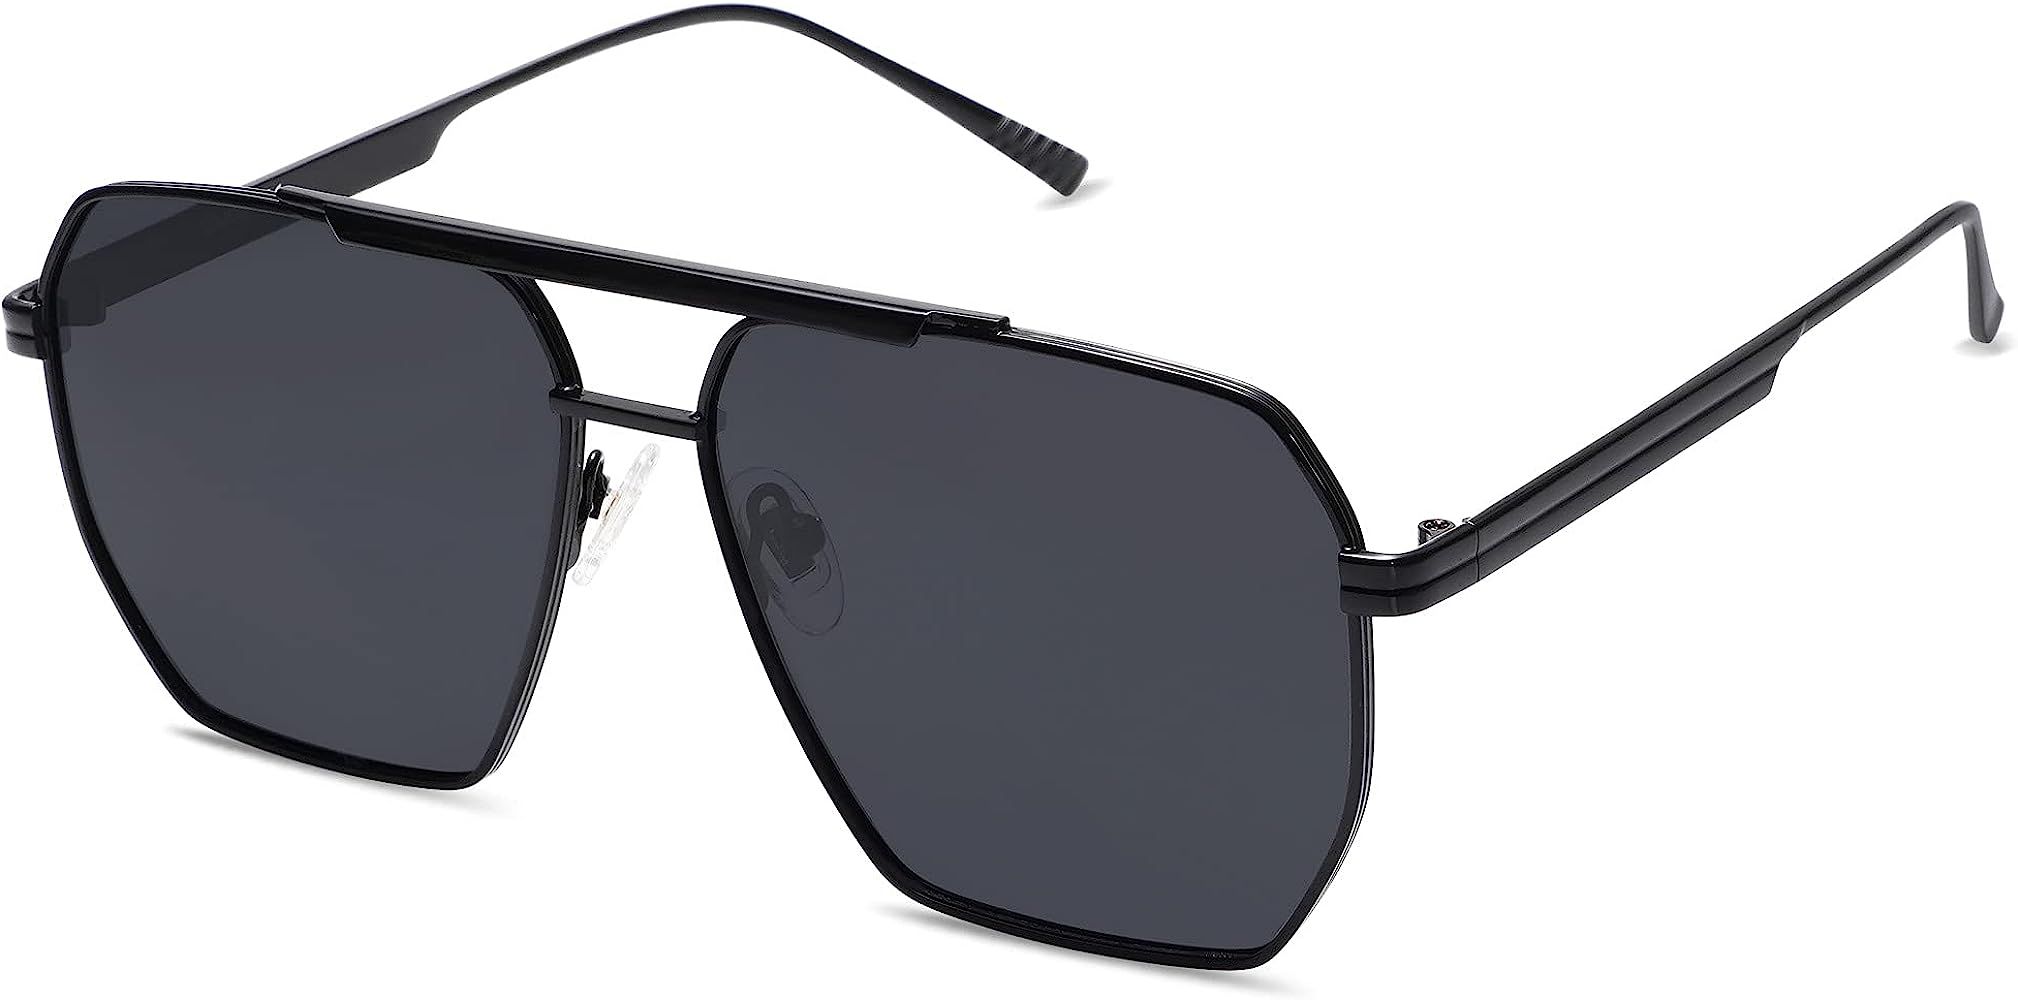 Retro Oversized Square Polarized Sunglasses for Women and Men Vintage Shades UV400 Classic Large ... | Amazon (US)